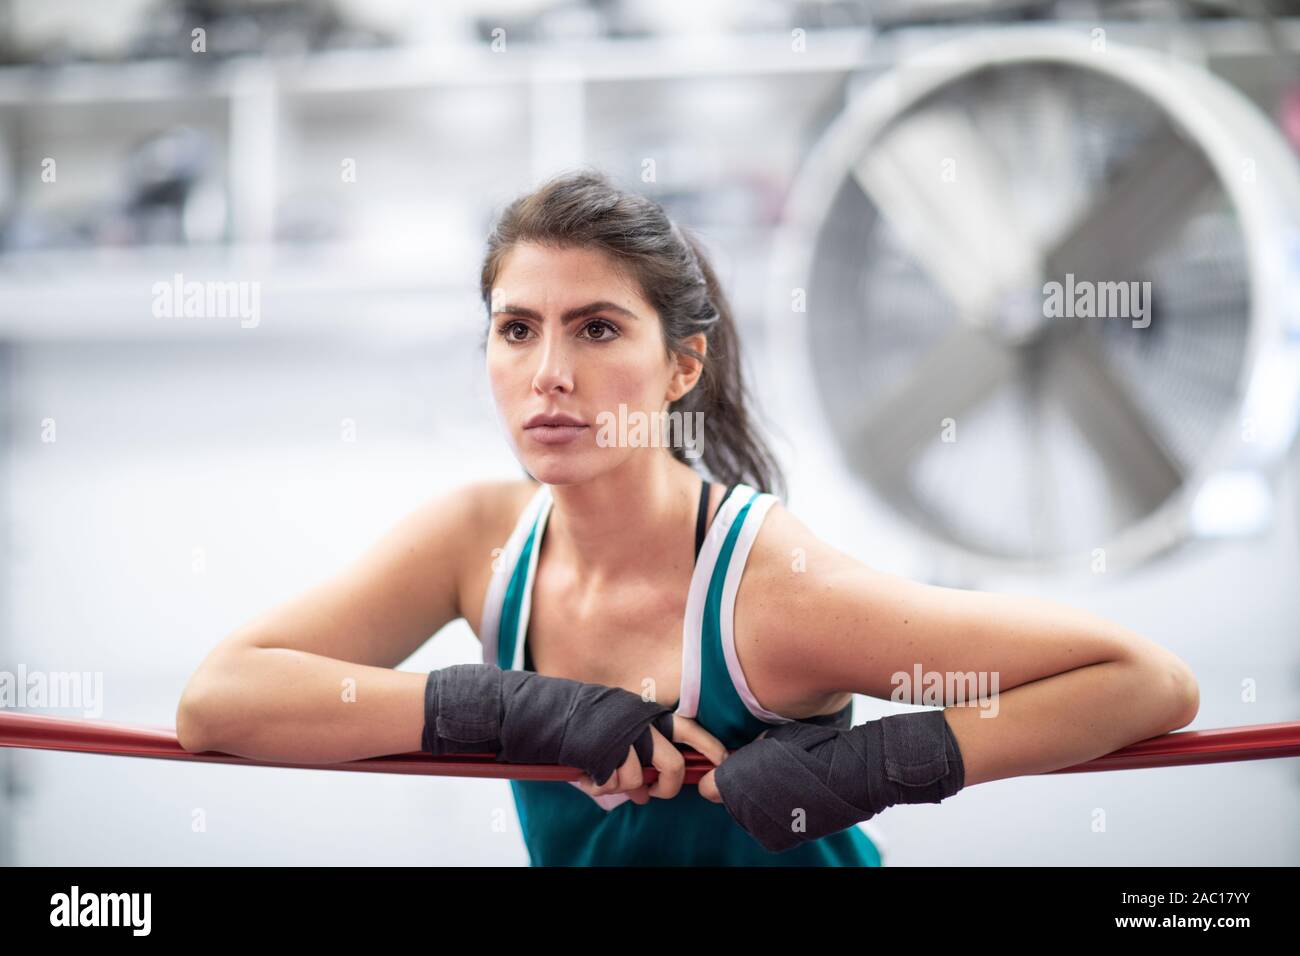 Ein badass female Boxer ruht auf Ring Seile mit ihr in einem Boxing Gym, weiße Wände, rote und schwarze Matten, drinnen Wraps. Stockfoto